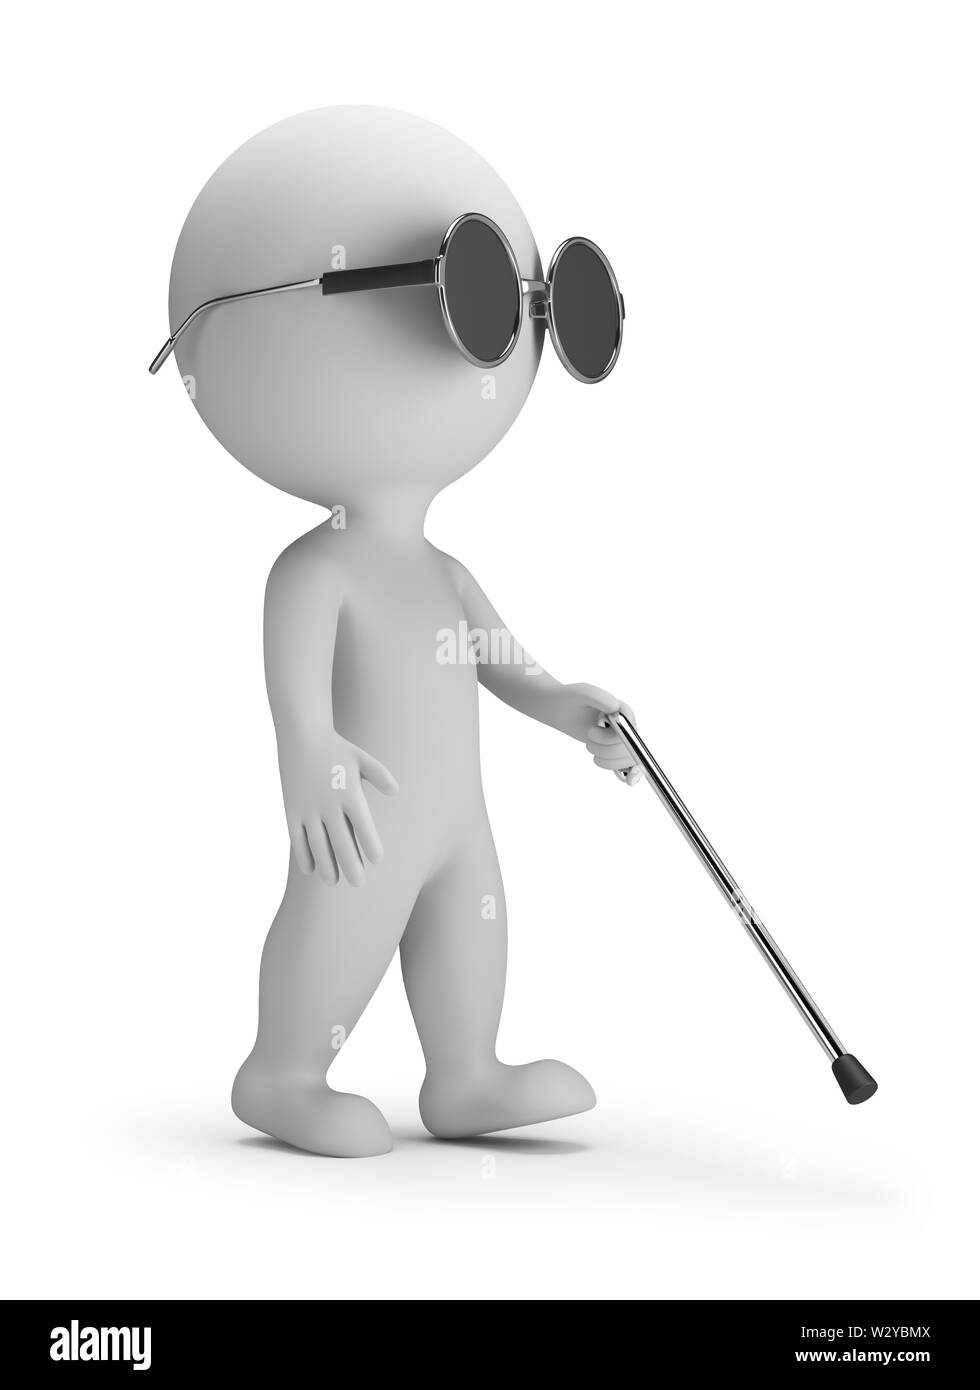 Petit 3d - personne aveugle avec une baguette. Image 3d. Arrière-plan blanc. Banque D'Images